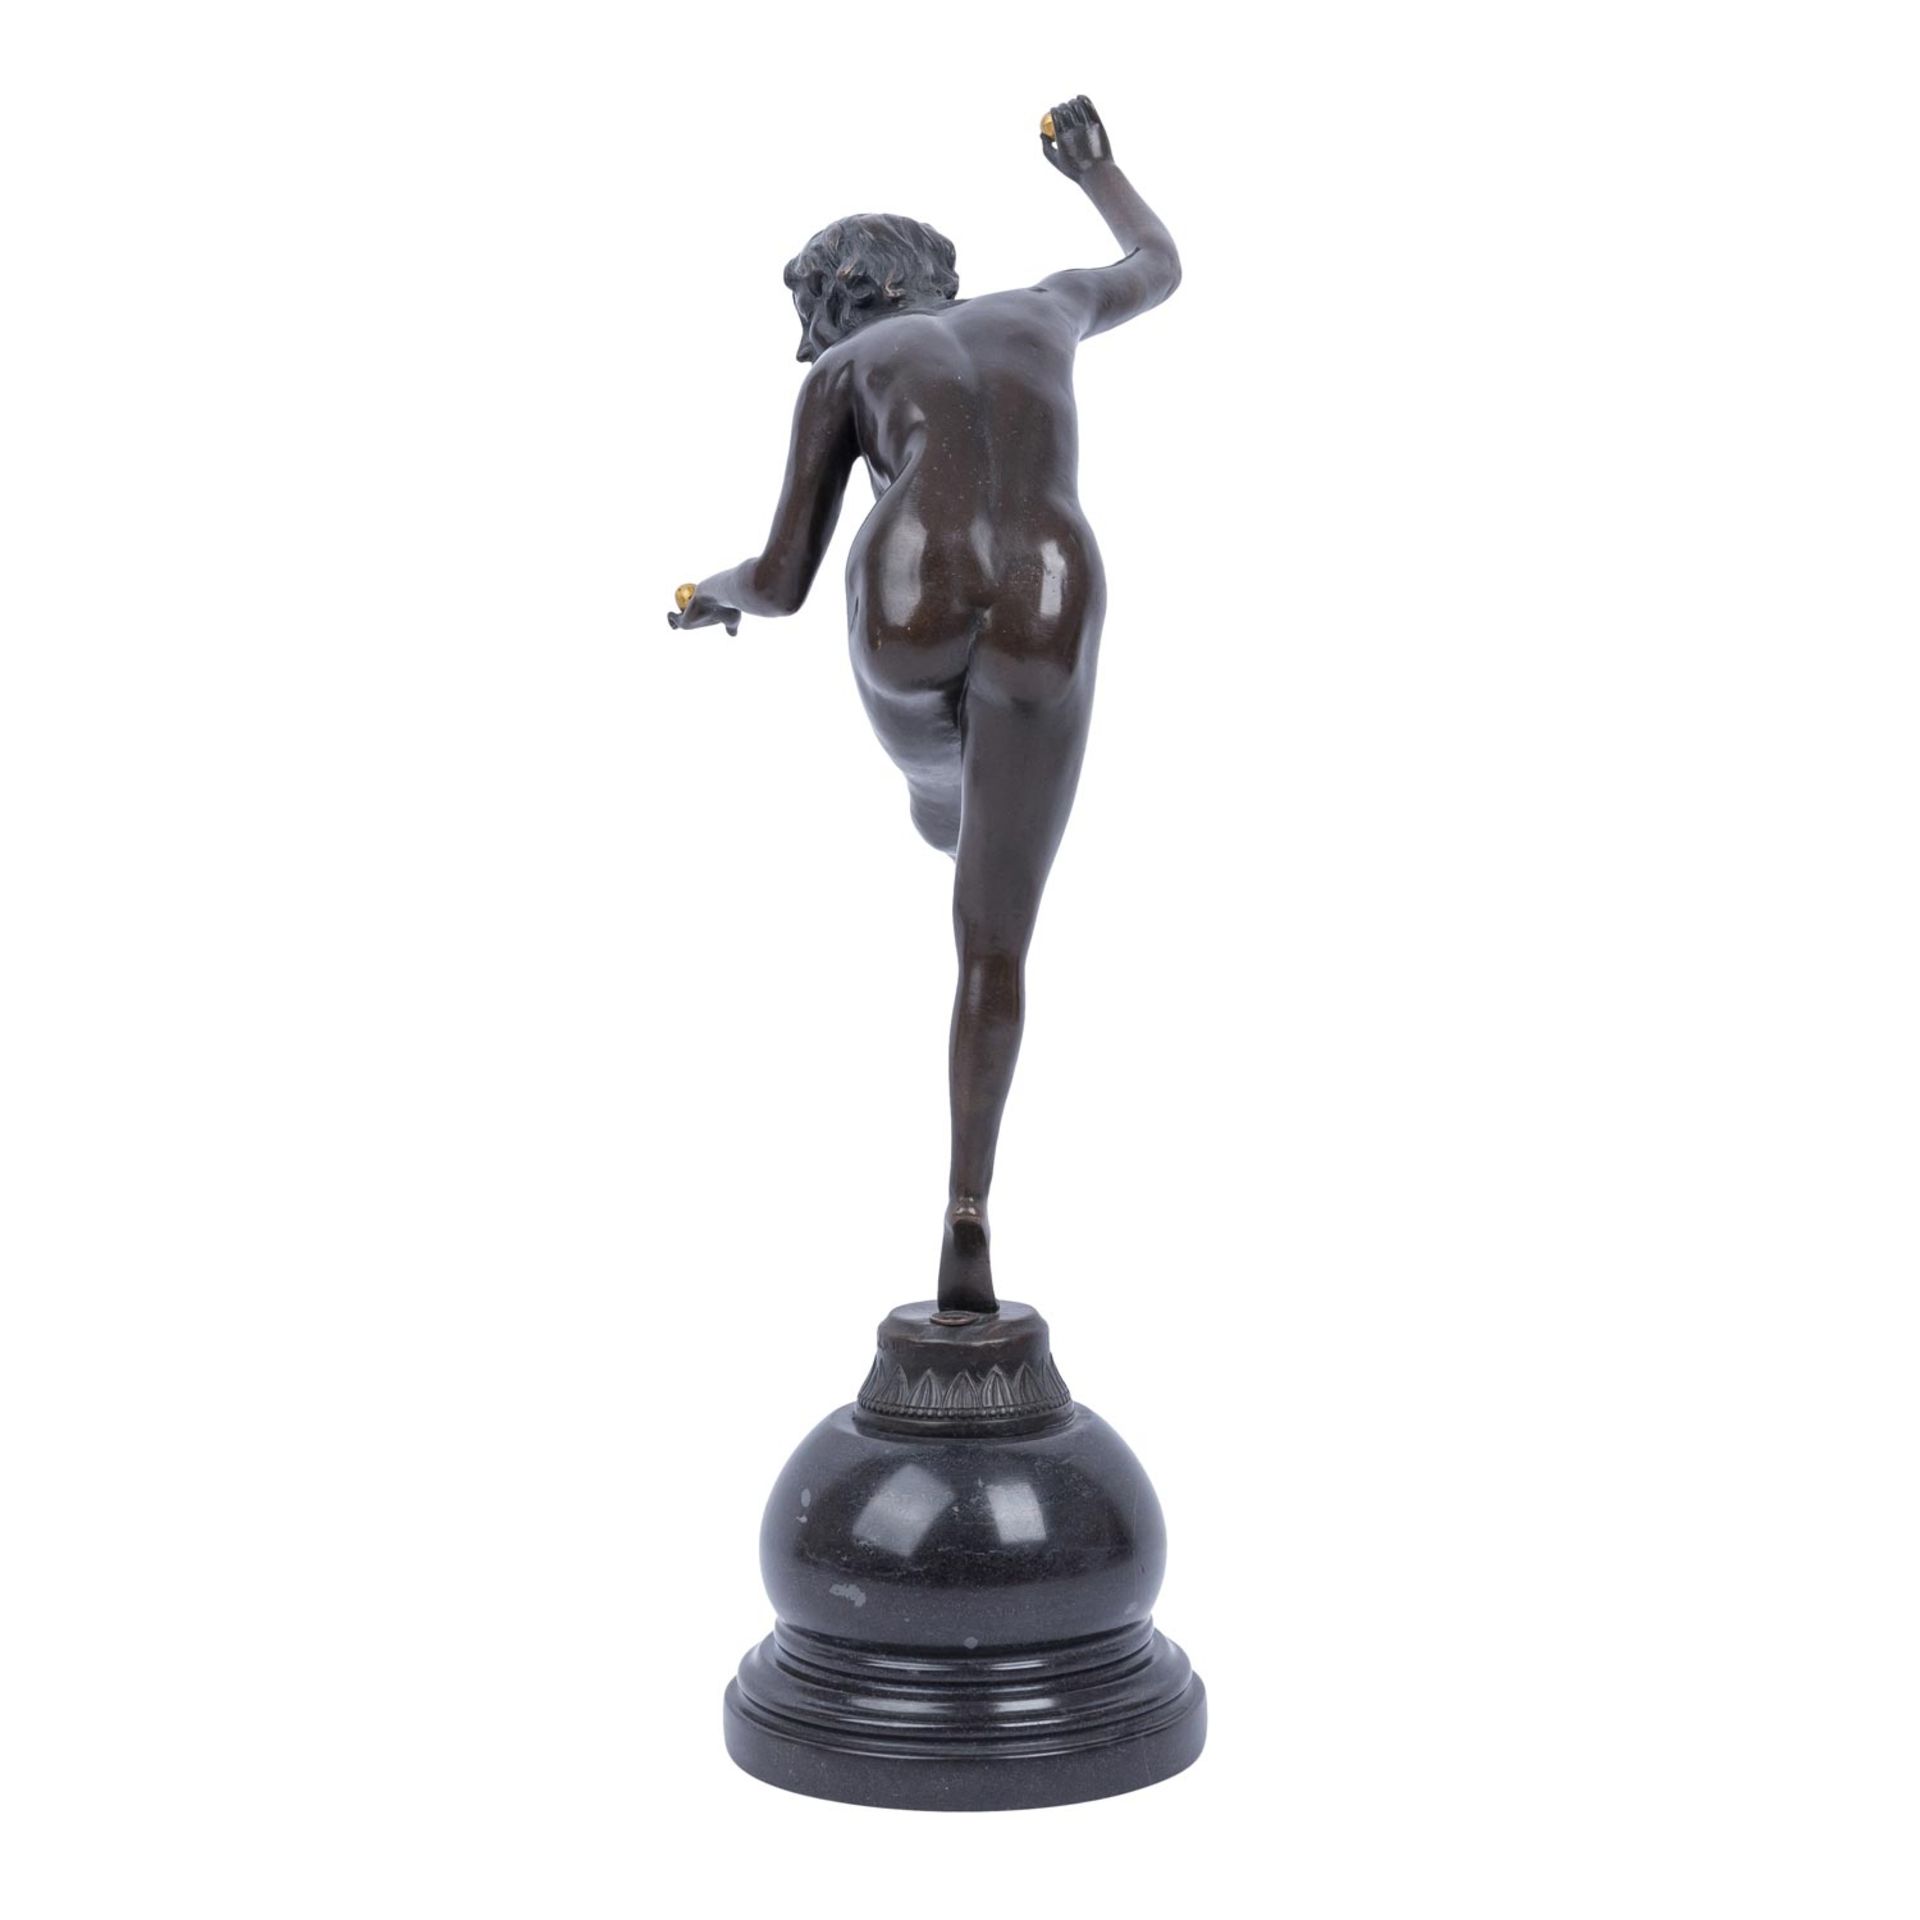 COLINET, CLAIRE (auch Godchaux Colinet, 1880-1950), "La jongleuse", - Image 4 of 8